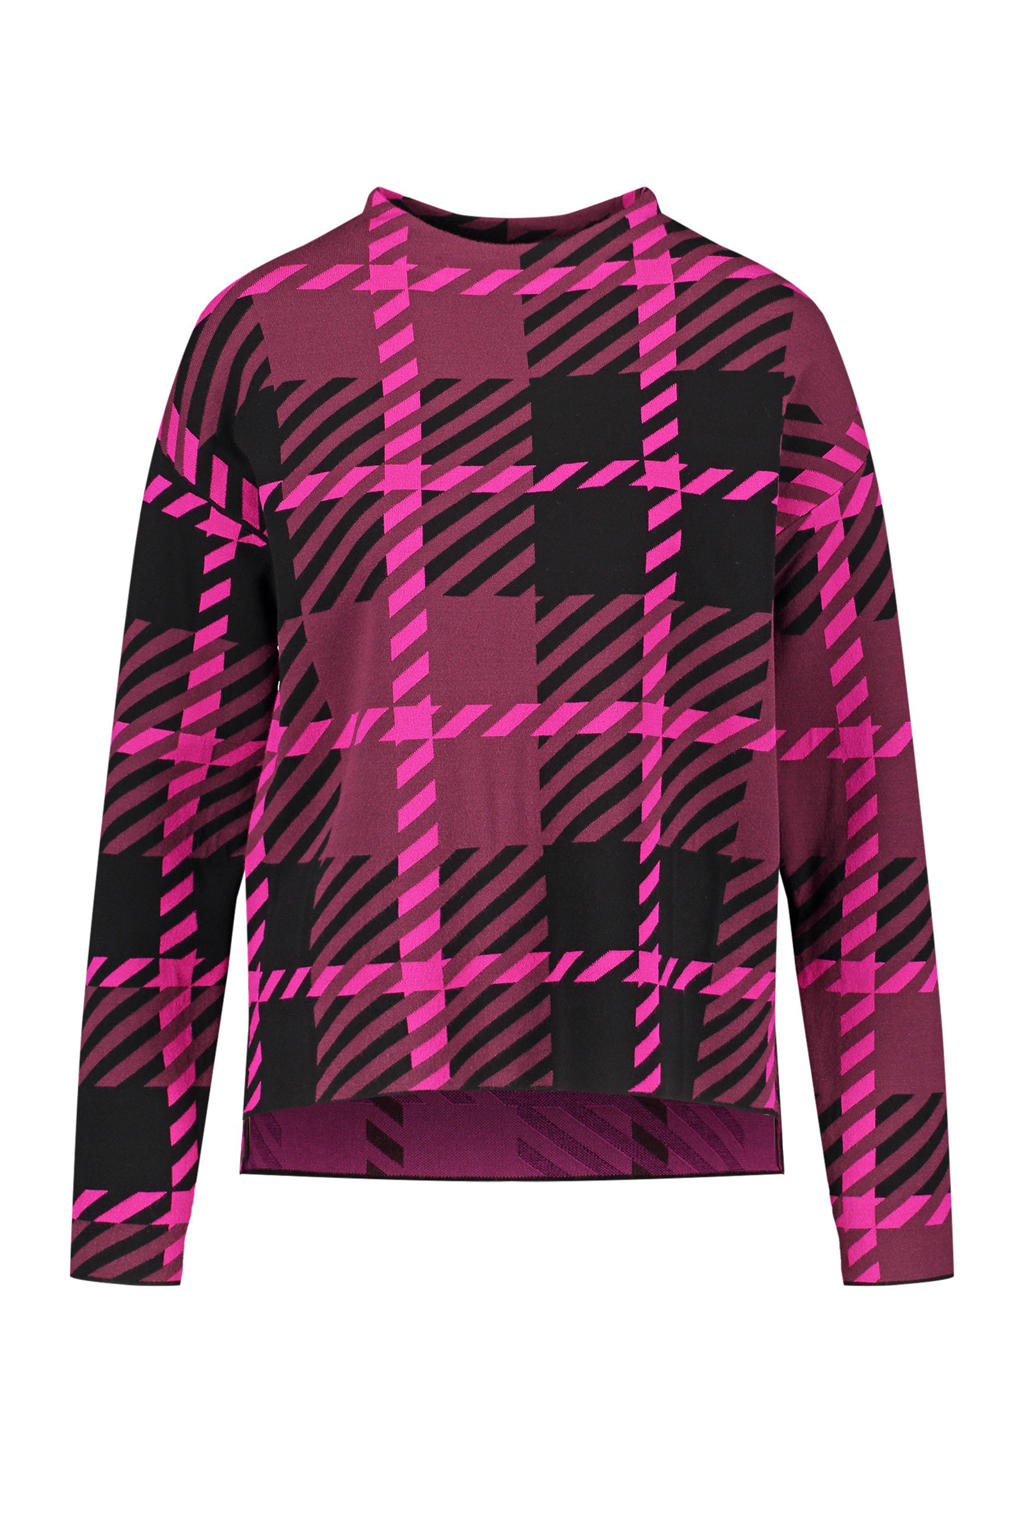 Roze en zwarte dames Gerry Weber trui van viscose met all over print, lange mouwen en ronde hals